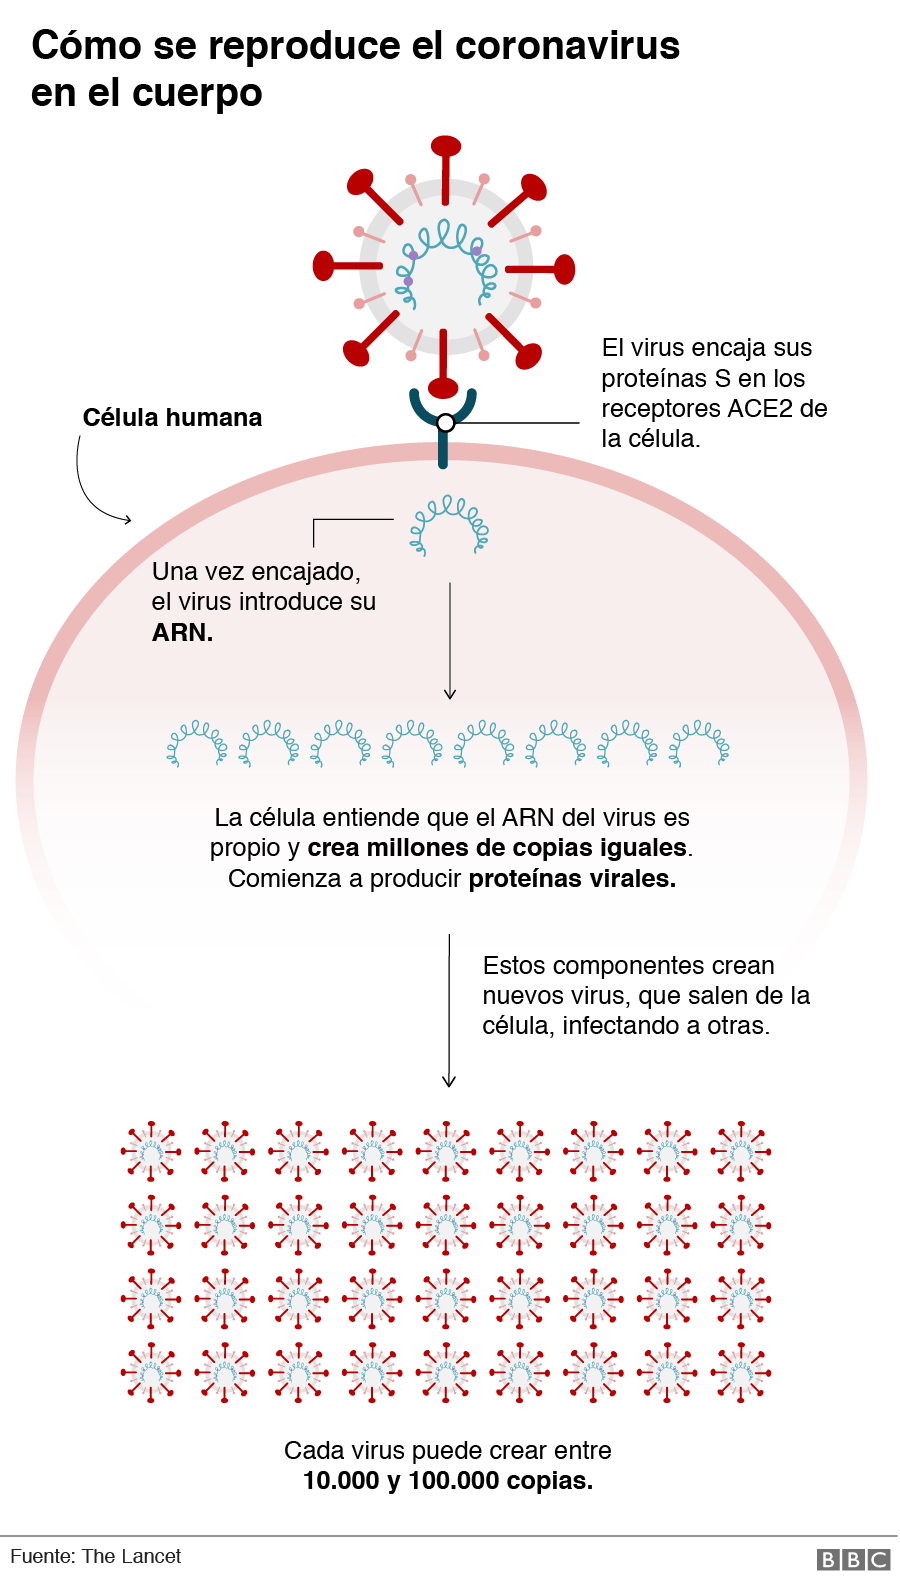 Gráfico sobre cómo entra el coronavirus al cuerpo